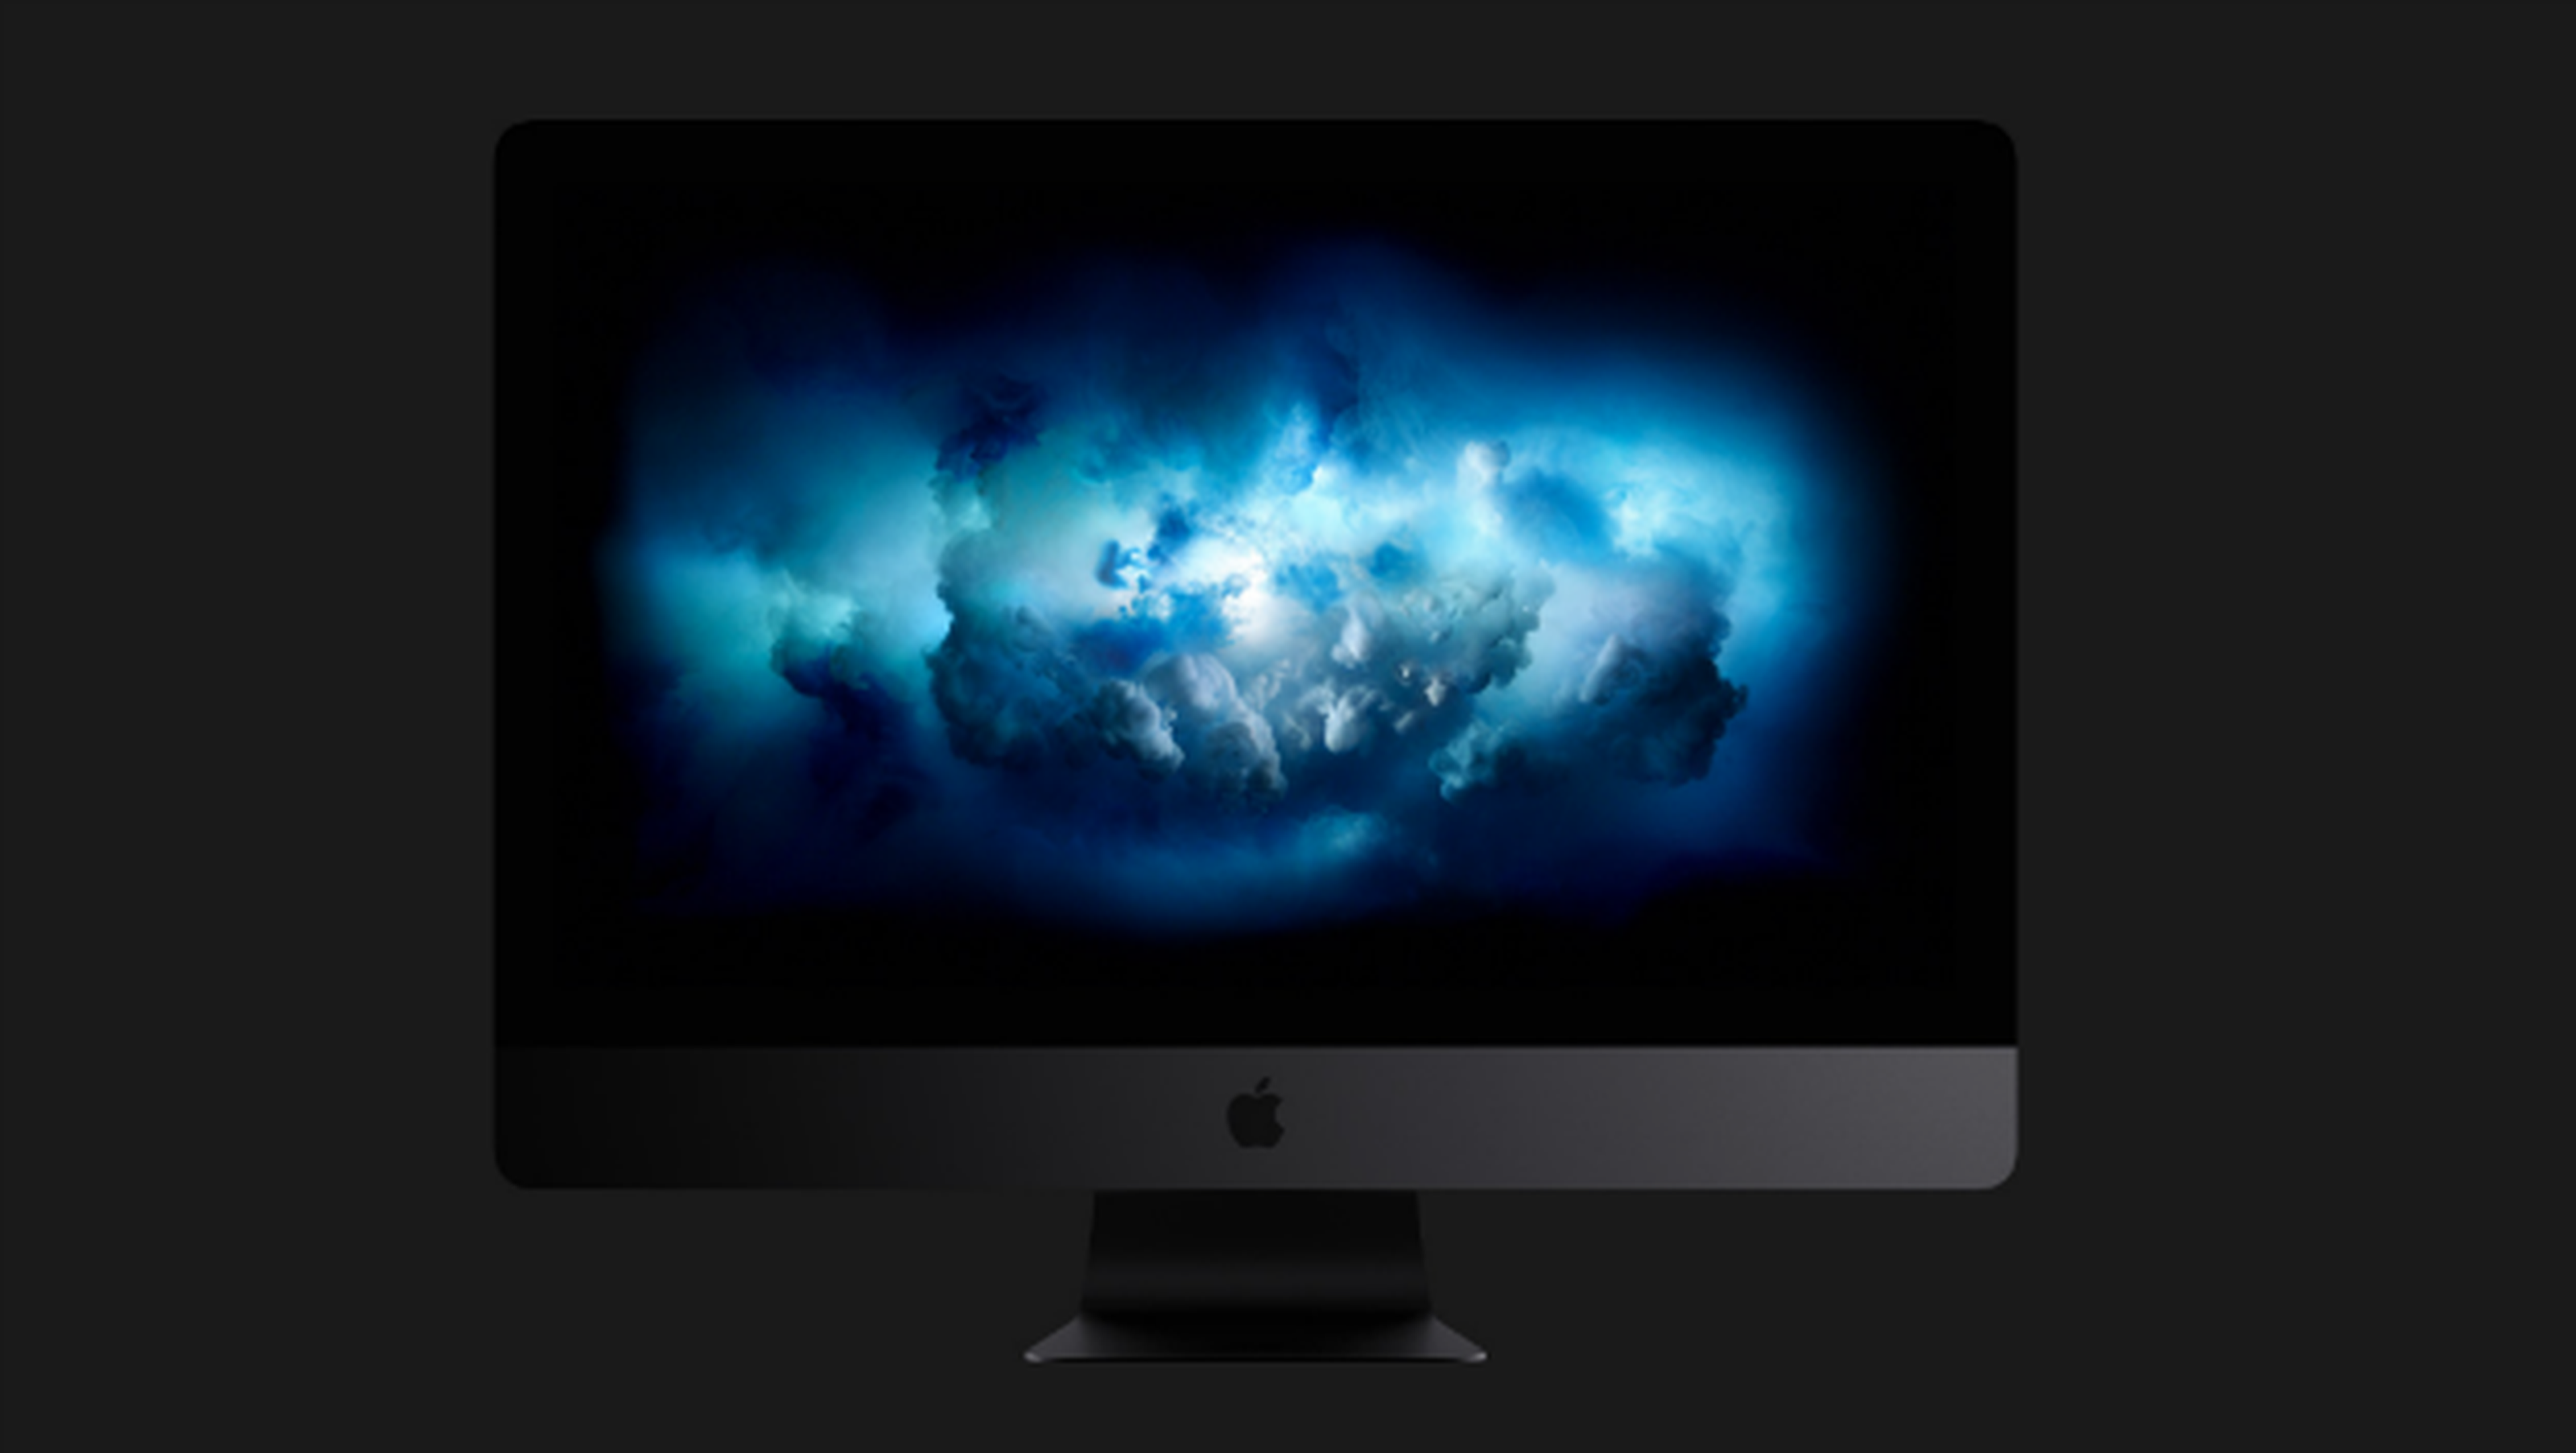 Descargar el wallpaper del Apple iMac Pro.